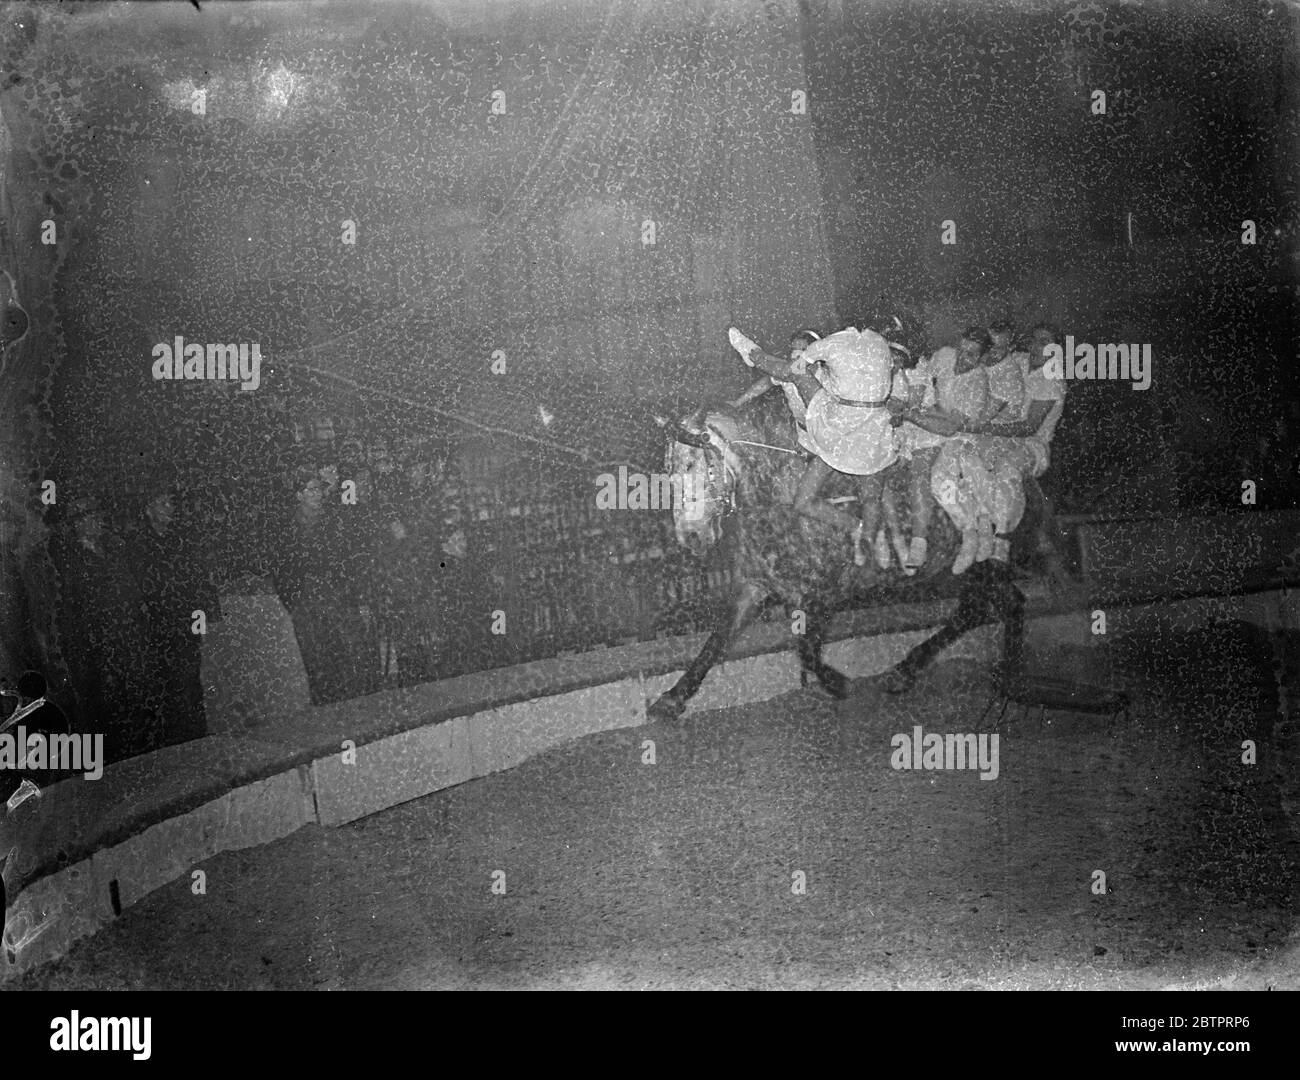 Sieben auf einem Pferd. Circus, probt seinen Nervenkitzel für Weihnachten. Trickreiter, Trapezkünstler und Clowns arbeiten dieses Wochenende hart daran, ihre Acts für den jährlichen Weihnachtszirkus in der Royal Agricultural Hall in Islington, London, zu polieren. Der Zirkus öffnet morgen (Montag). Foto zeigt, sechs der Carolis, die auf einem einzigen Grau um den Ring hüten, während ein weiteres Mädchen der Truppe aufspringt, um auf den Pferden wieder zu spielen, bei einer Probe heute (Sonntag). 19 Dezember 1937 Stockfoto